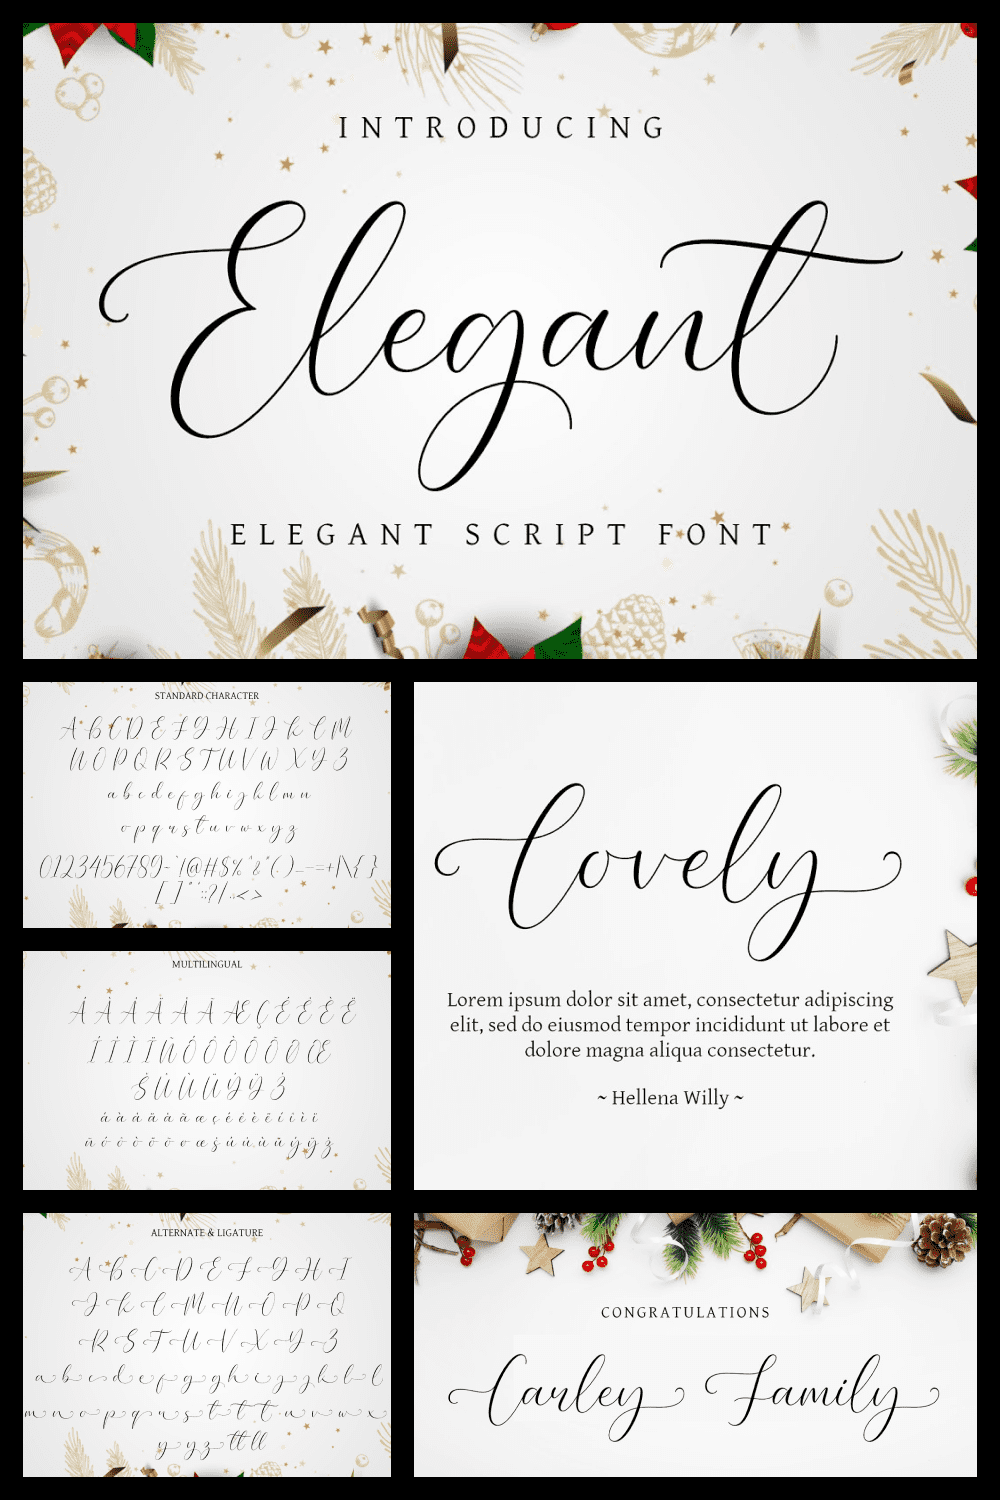 Elegant - elegant script font.